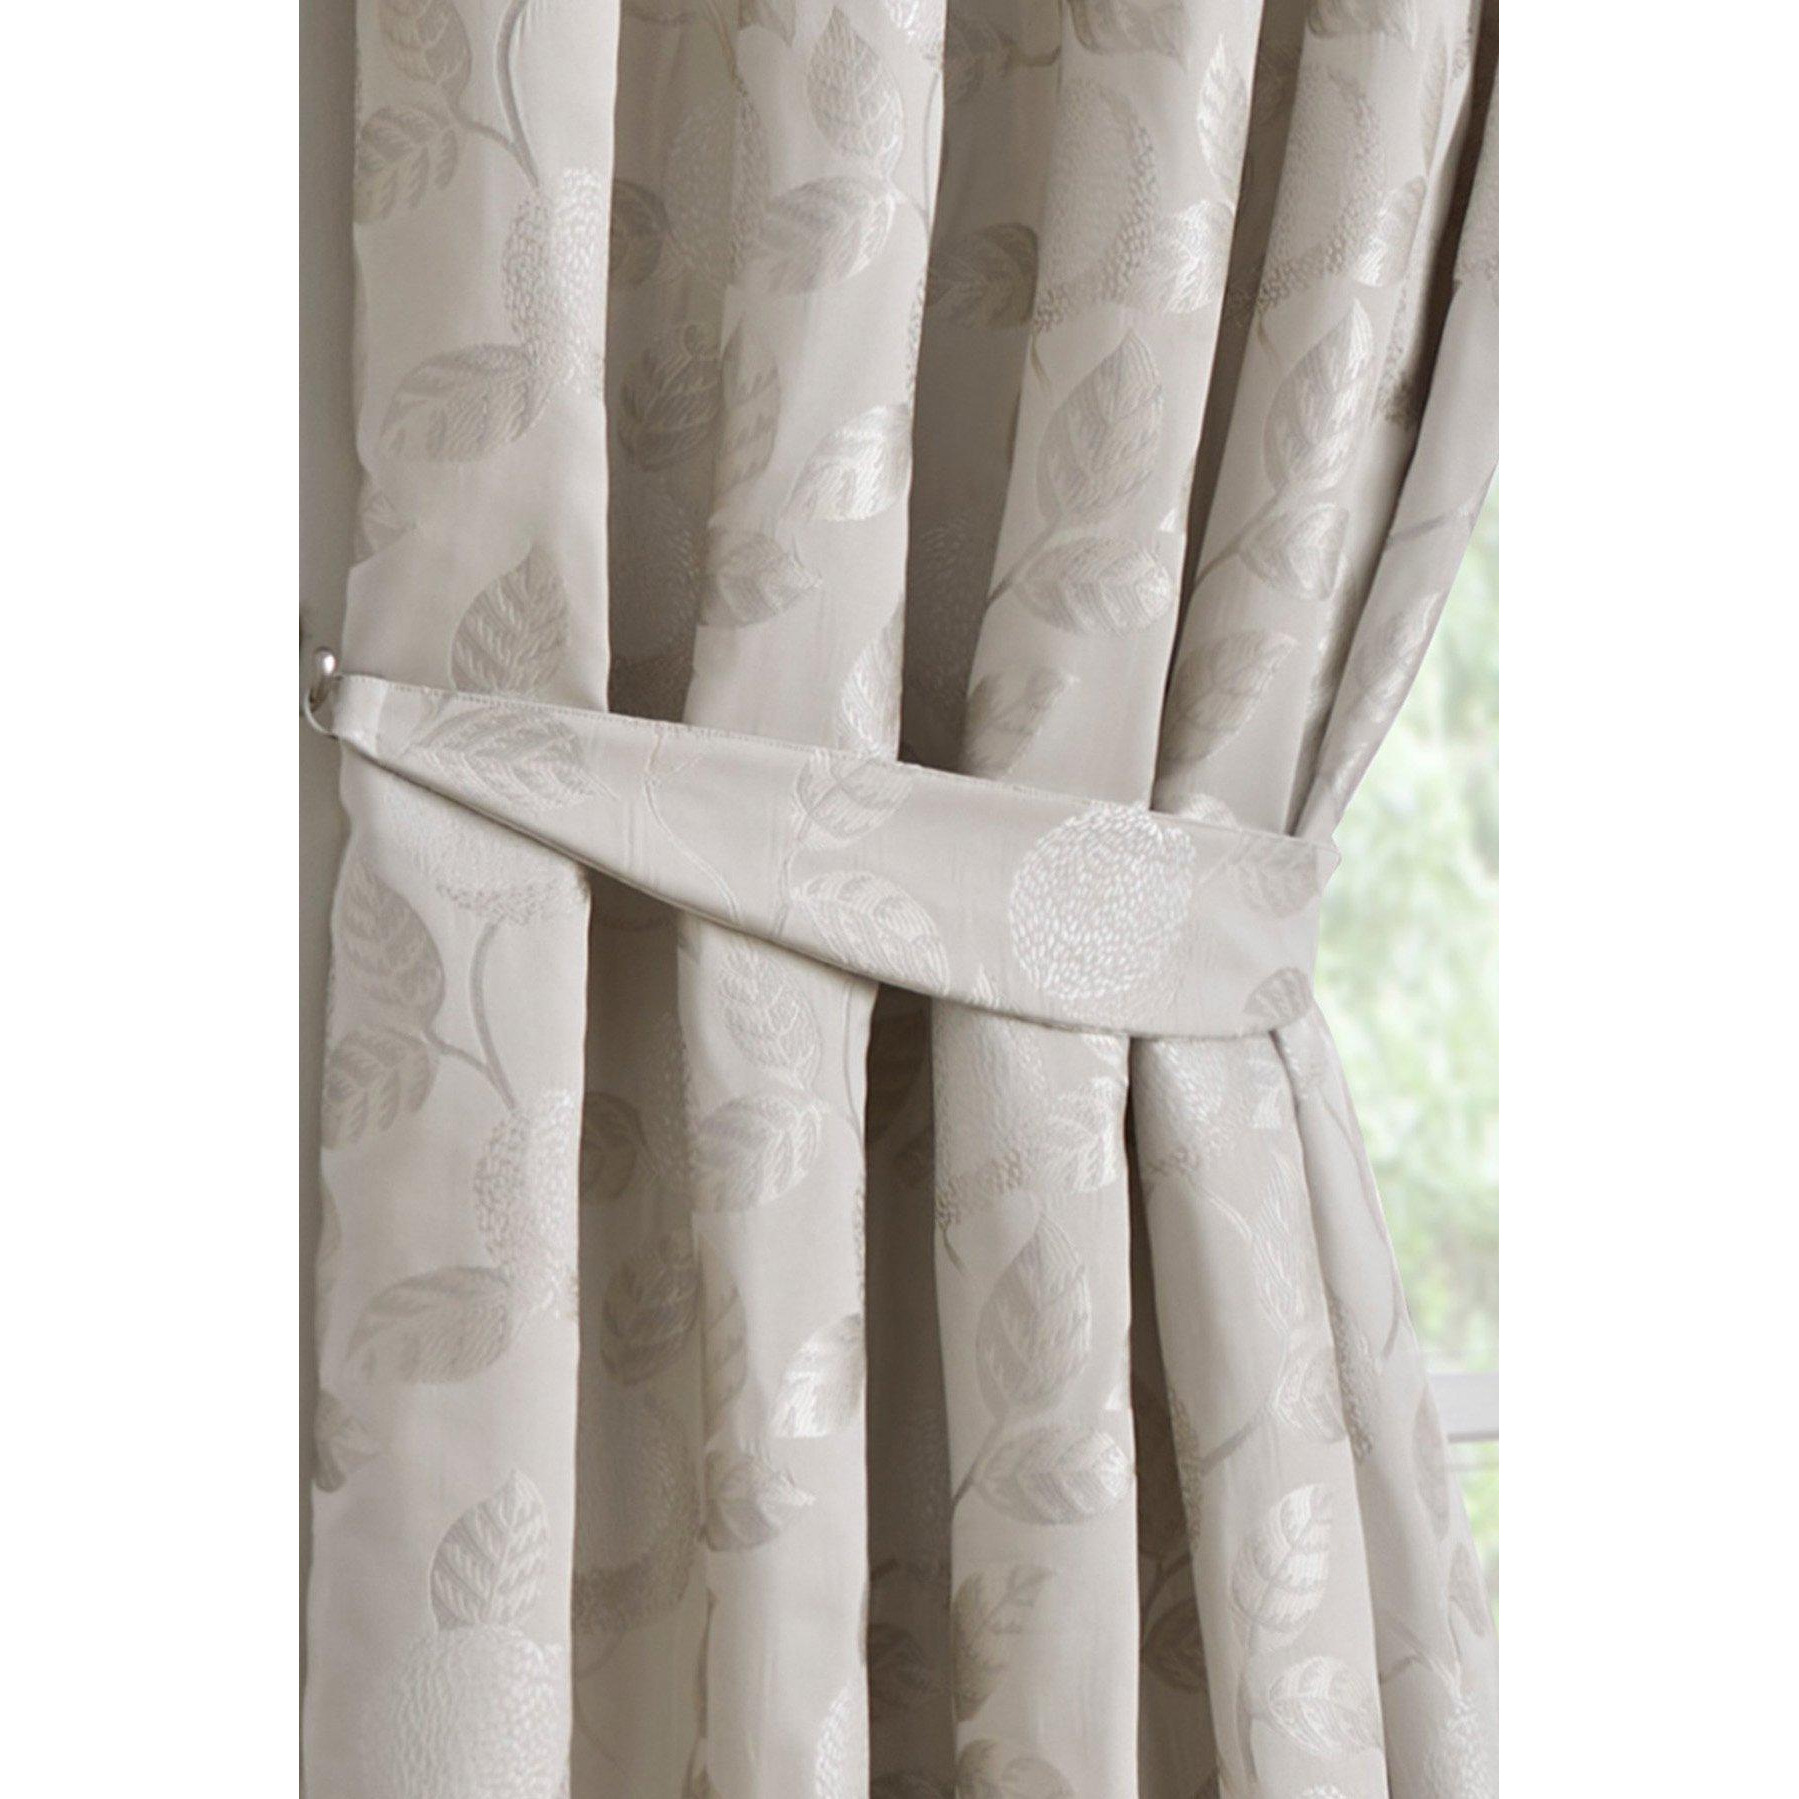 'Bramford' Pair Of Curtain Tiebacks - image 1